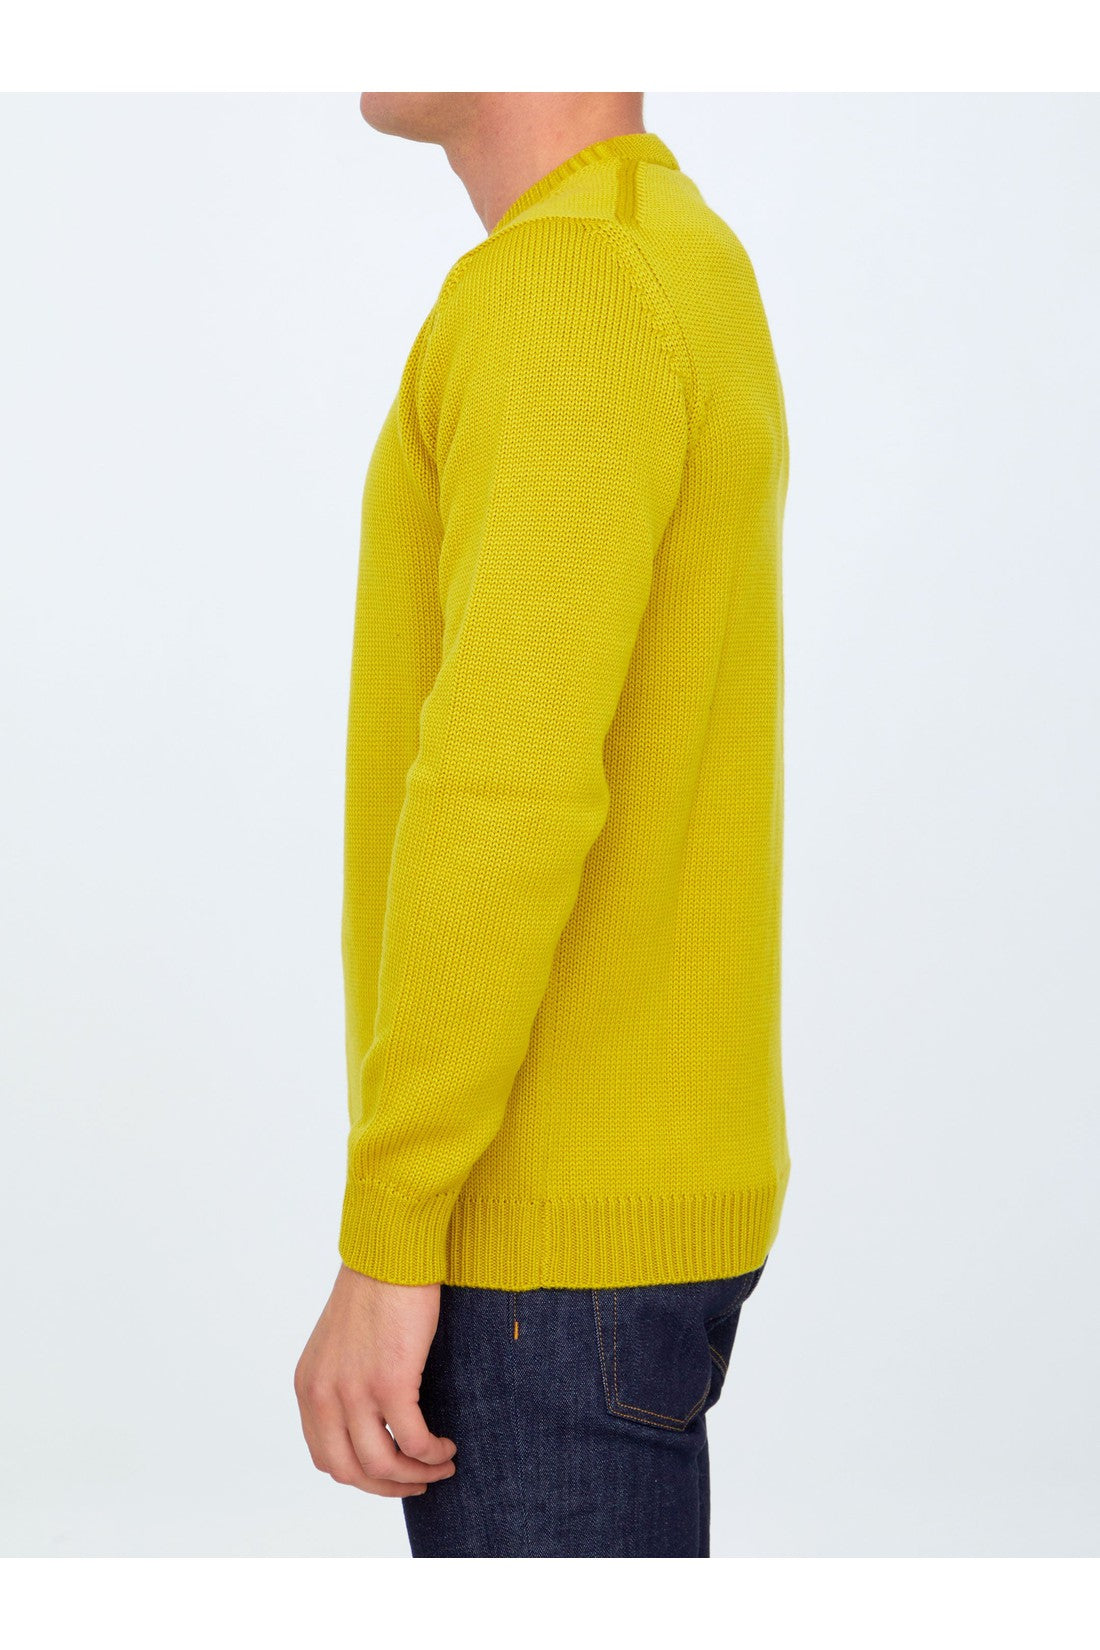 Yellow merino wool sweater